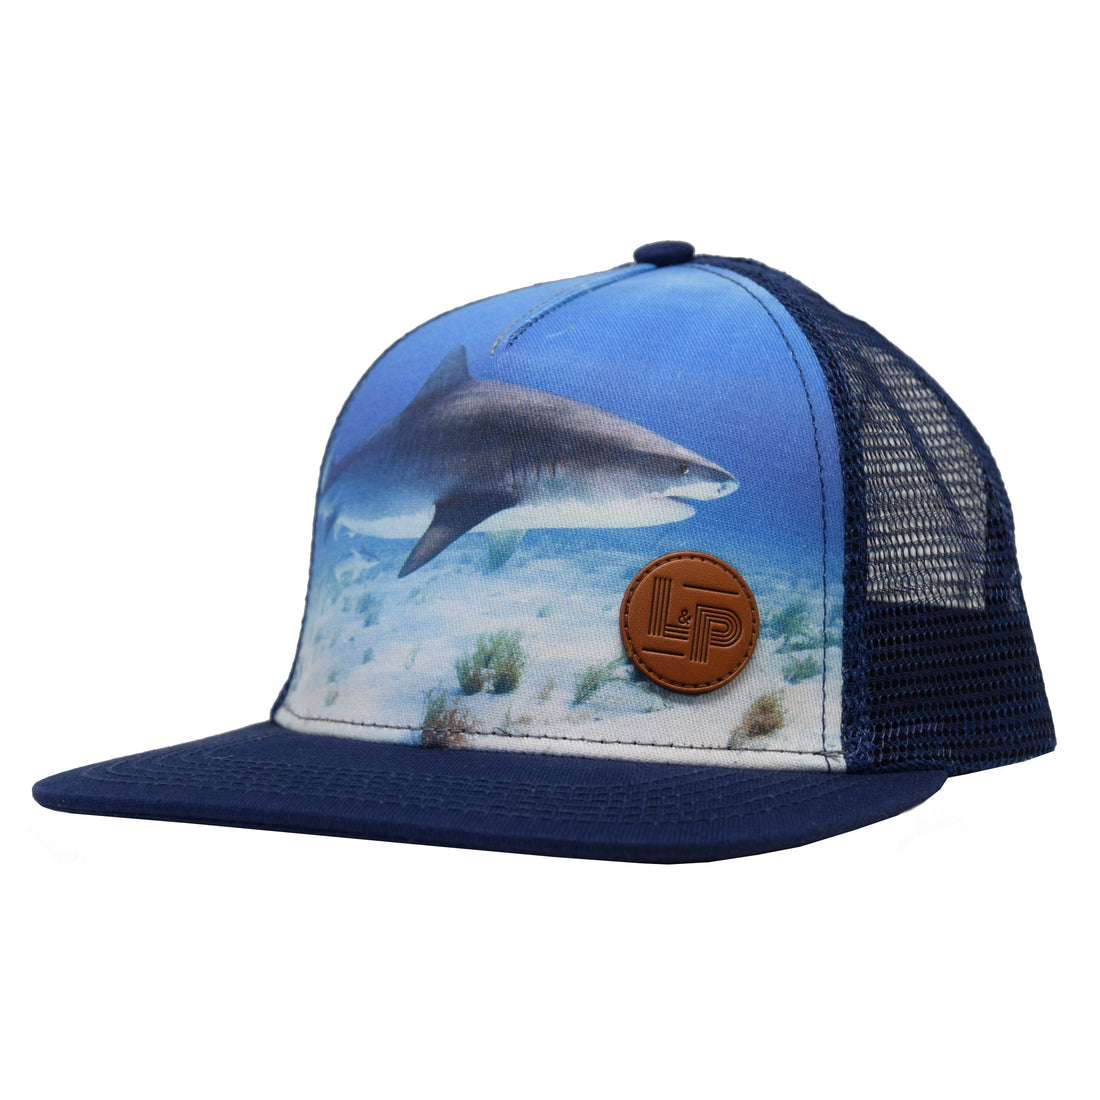 Snapback cap (Shark)